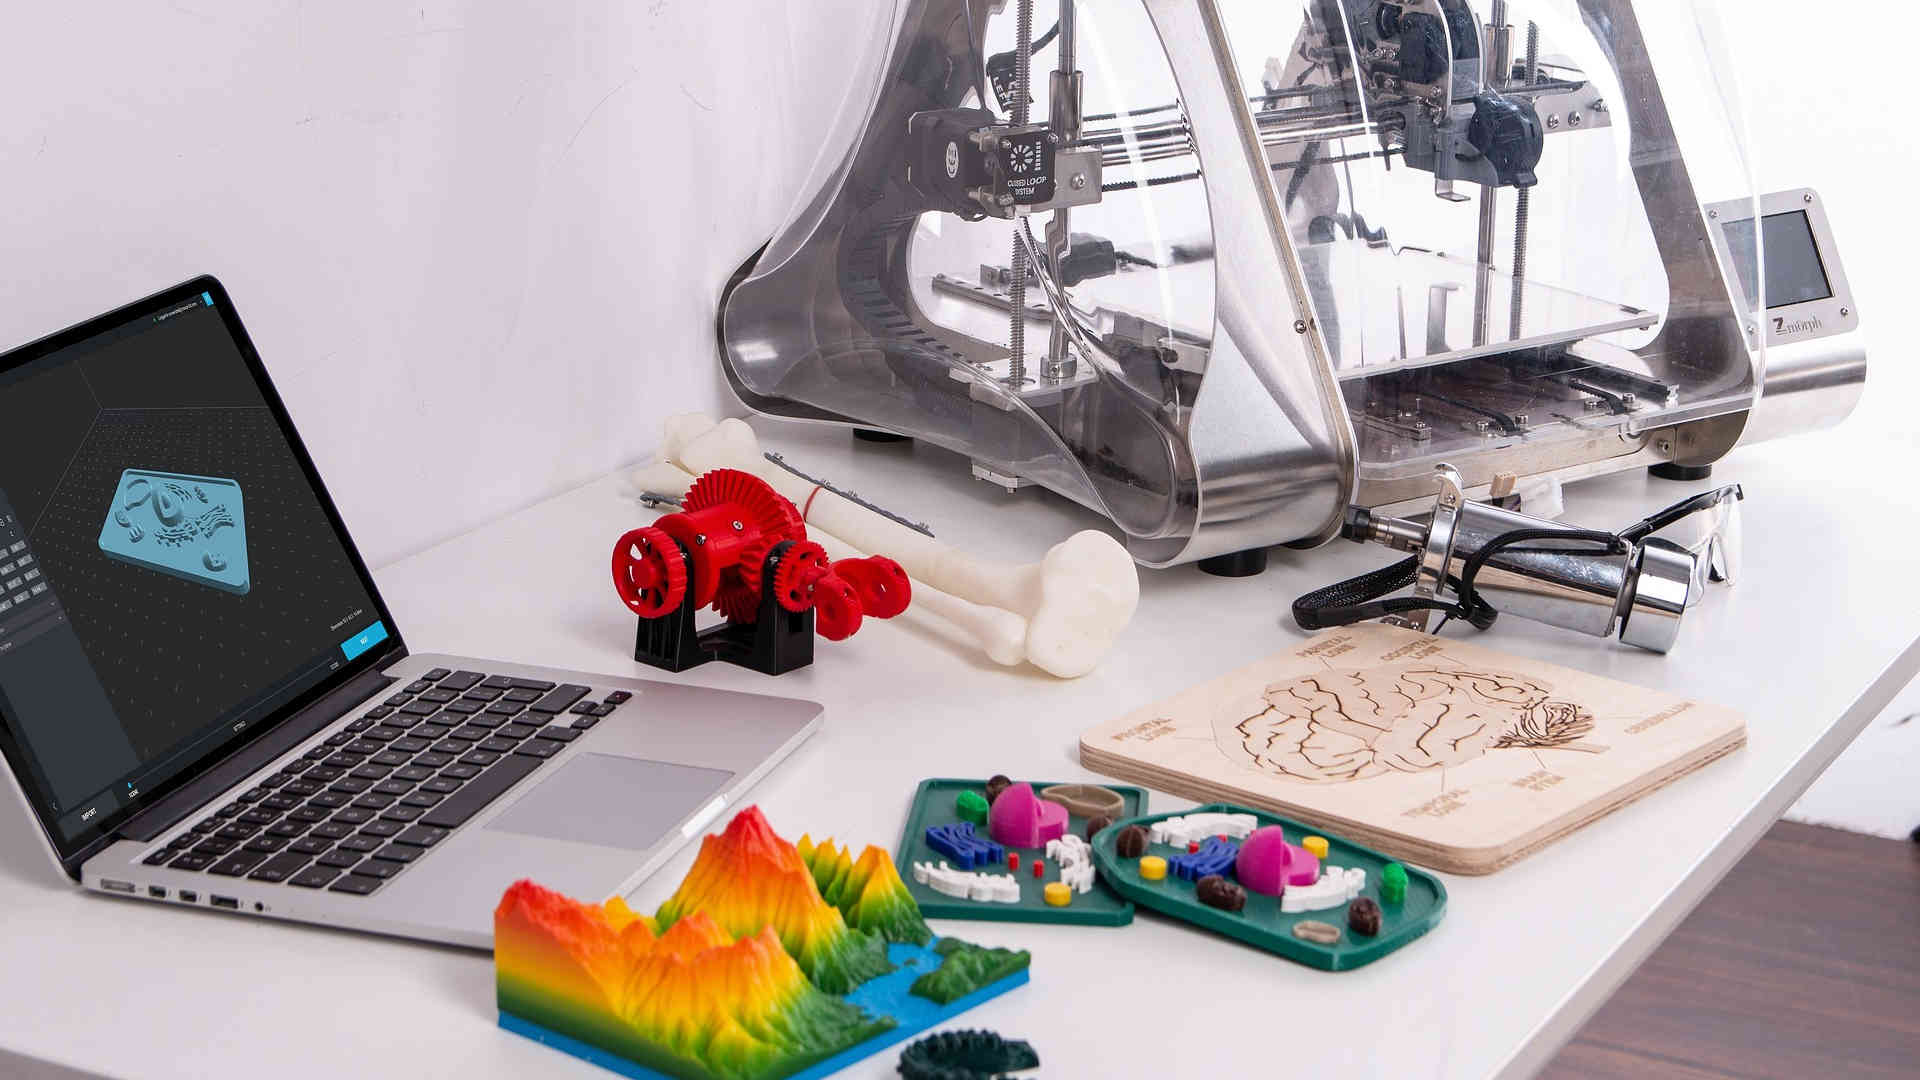 Auf dem Tisch stehen ein 3D-Drucker und ein Laptop mit einer 3D-Software. Davor liegen einige bunte Gegenstände, die schon mit dem Drucker hergestellt wurden.